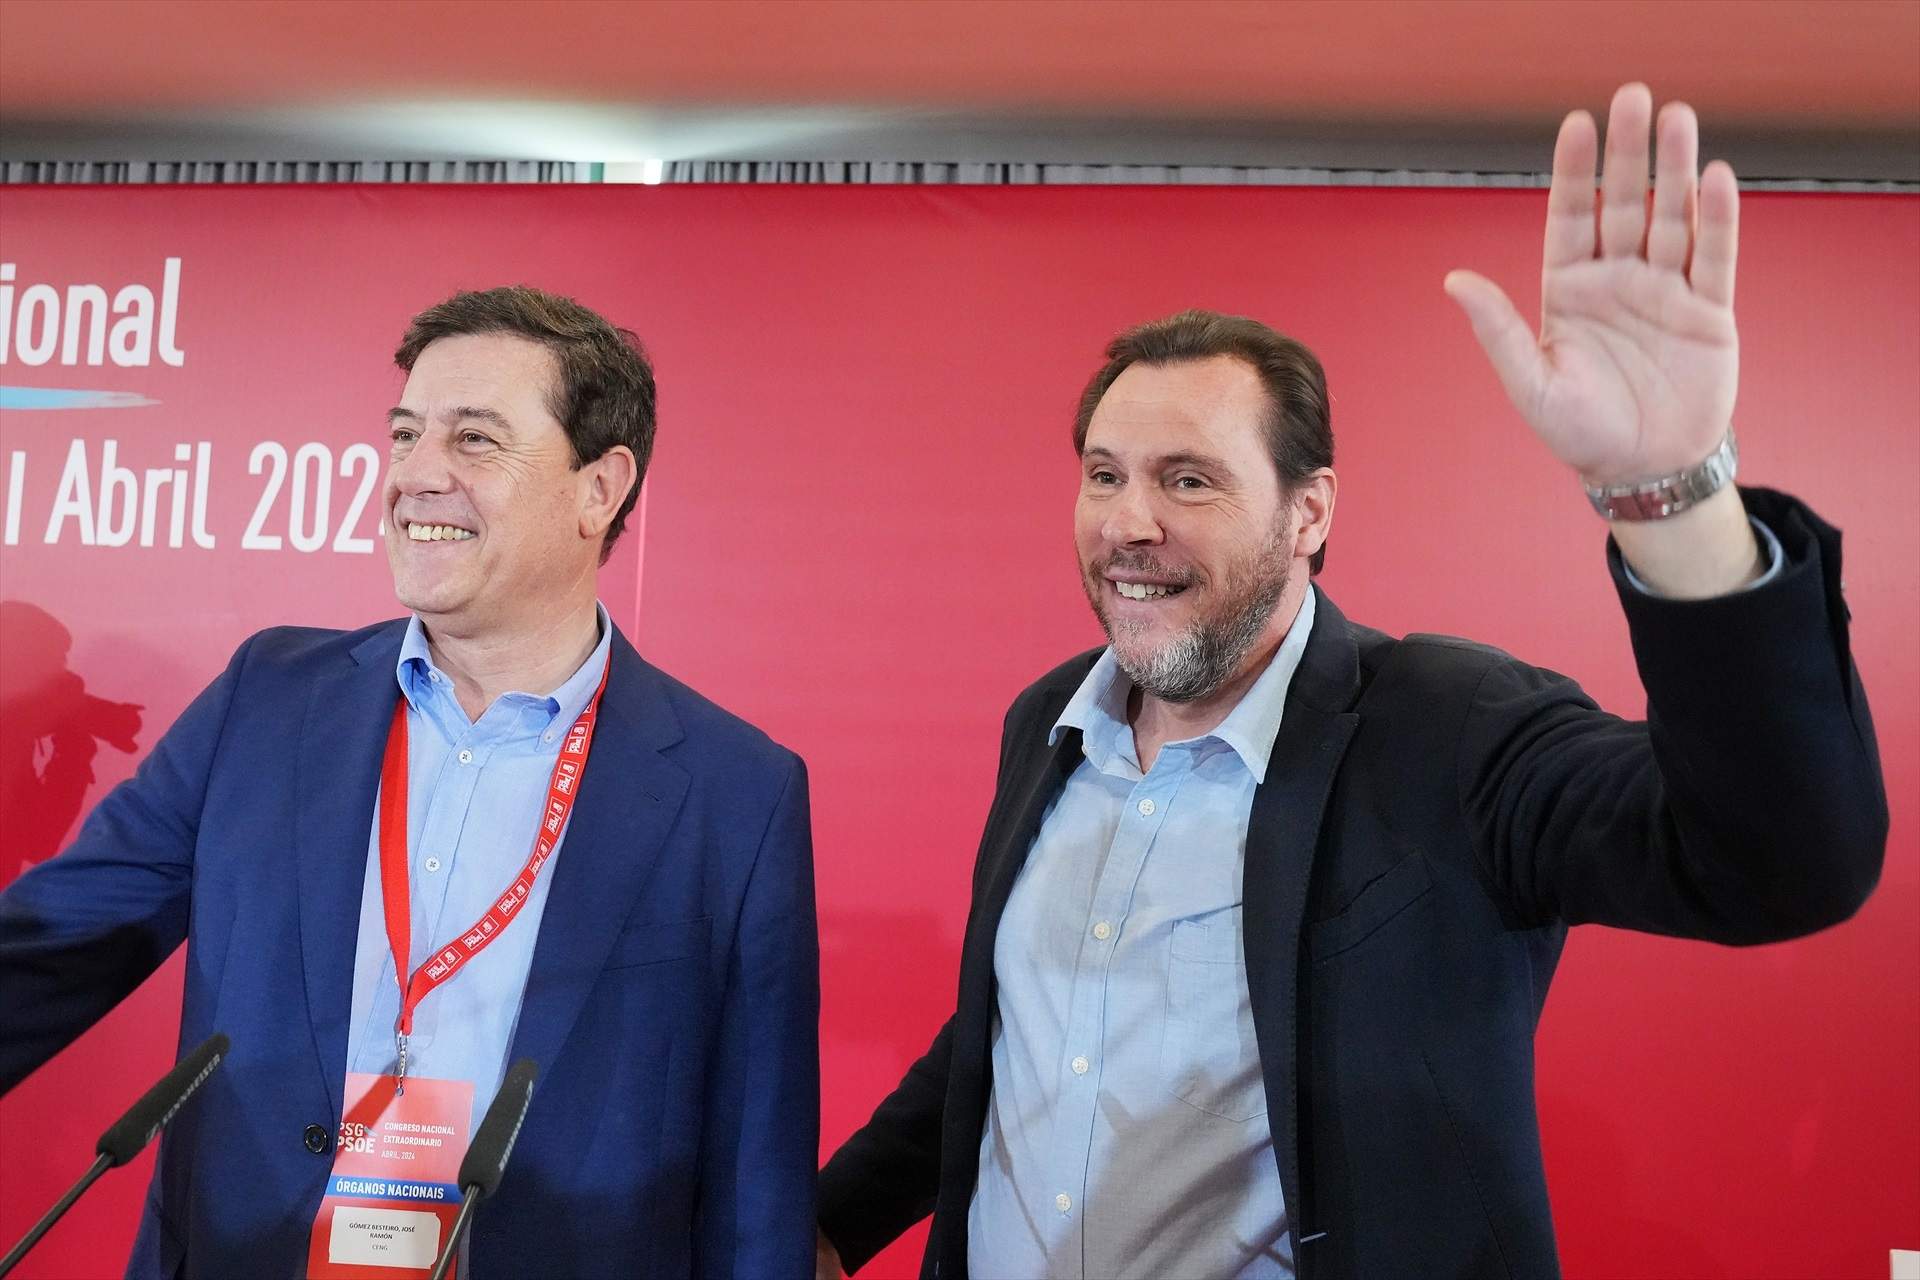 Unes declaracions del ministre Puente alimenten les apostes d'una possible dimissió de Pedro Sánchez